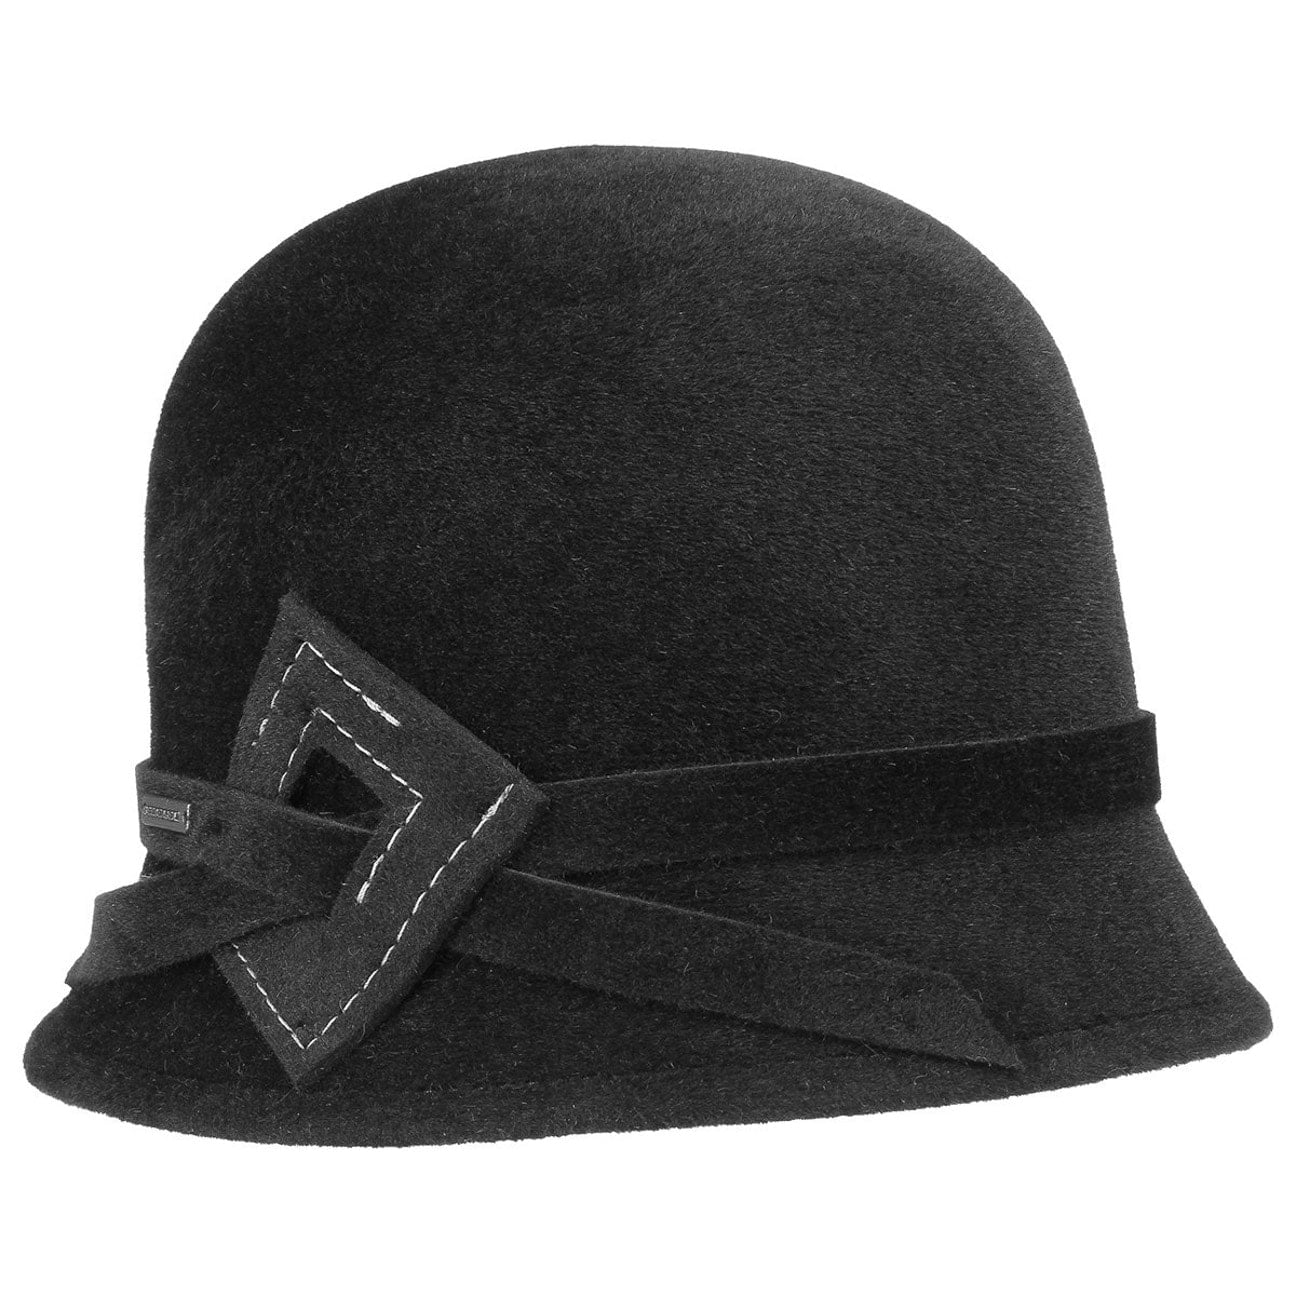 Accessoires Chapeaux et casquettes Chapeaux et bonnets dhiver chapeau cloche feutre main rouge noir 